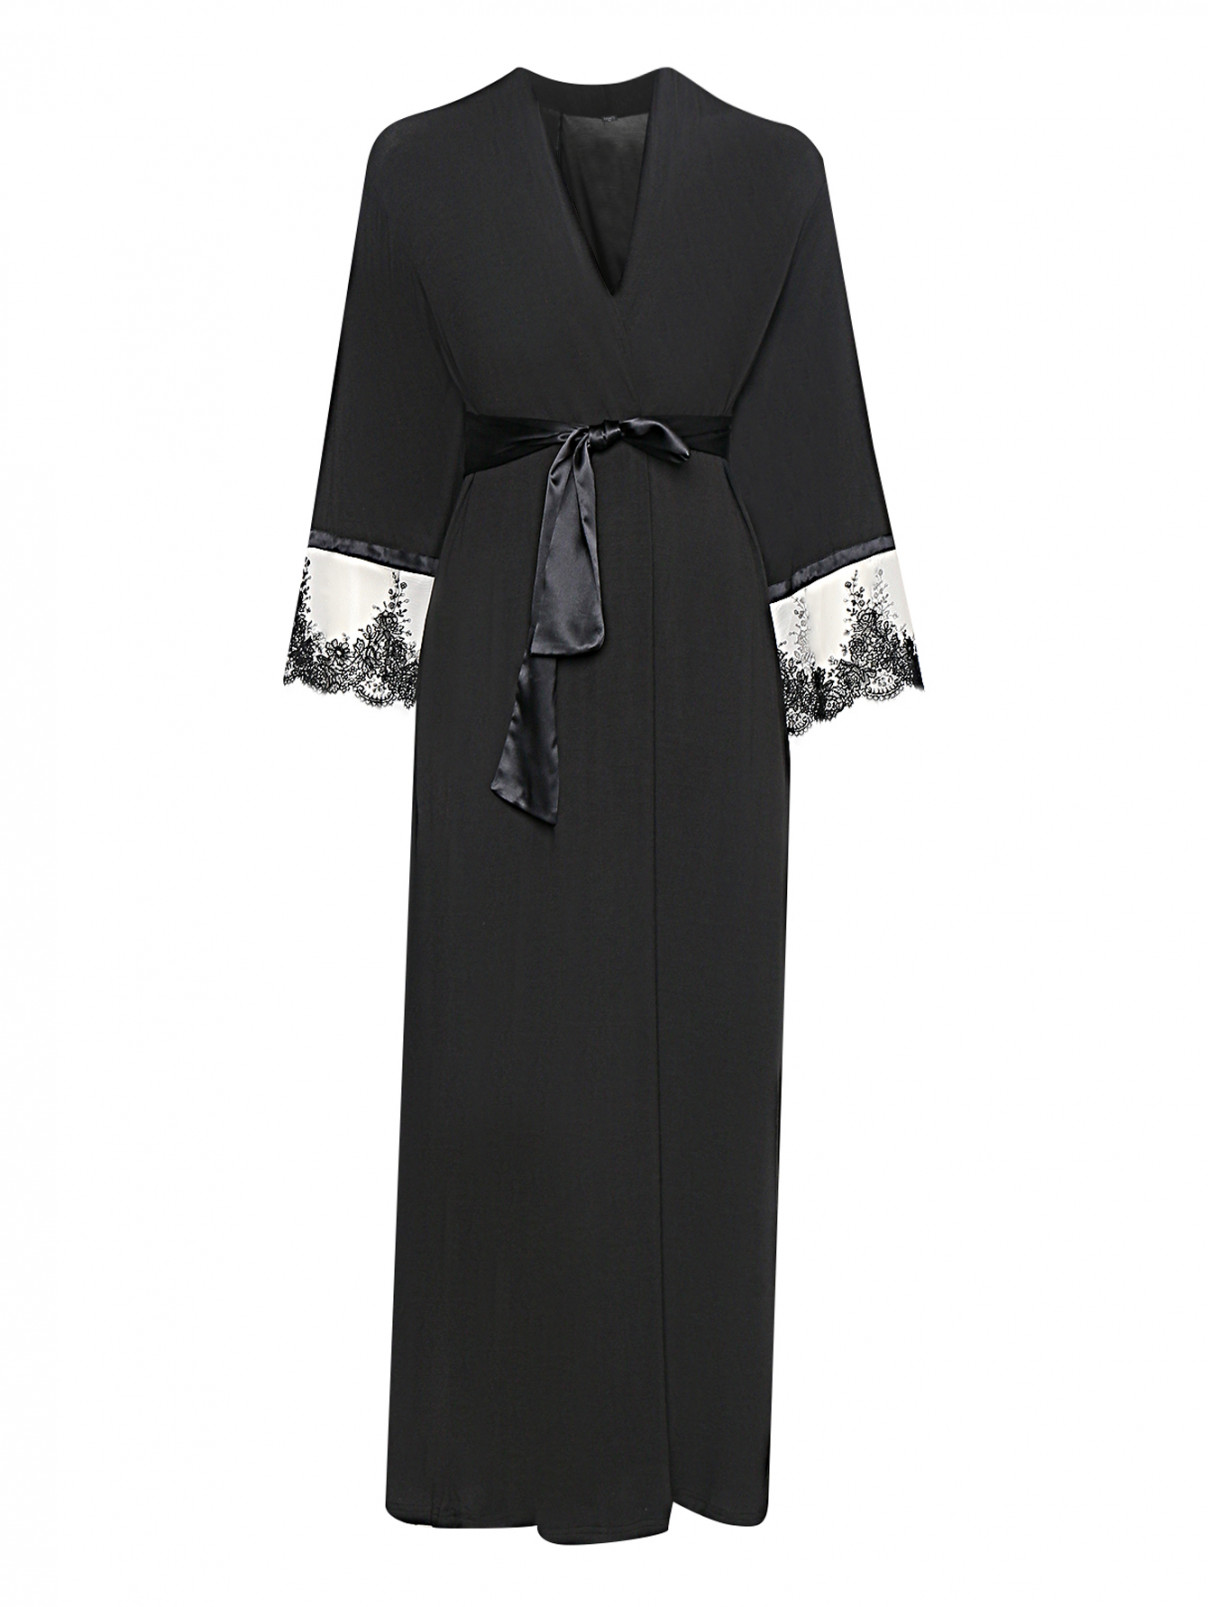 Халат с кружевной вышивкой на рукавах Ritratti  –  Общий вид  – Цвет:  Черный